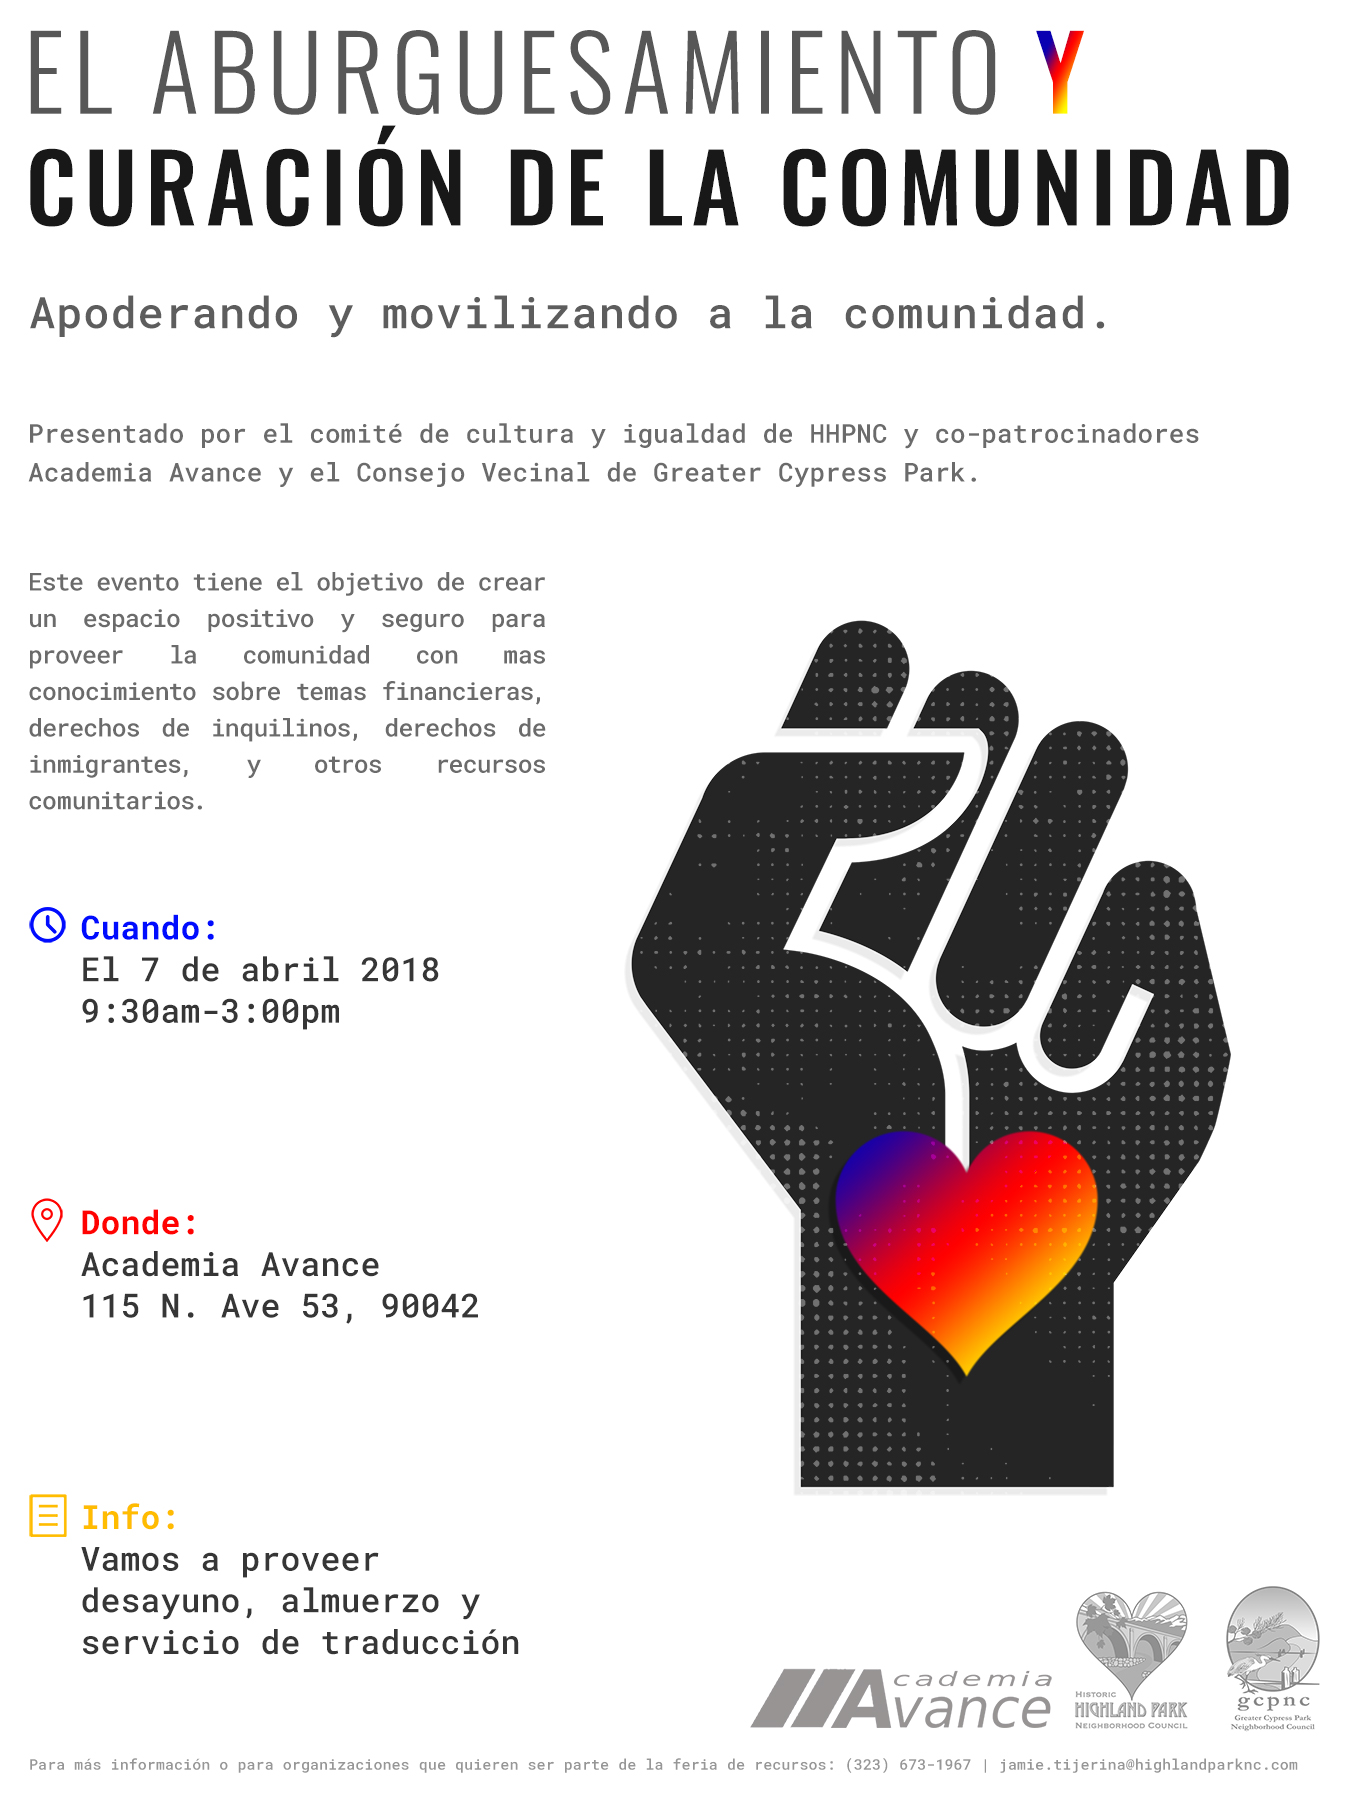 HHPNC & GCPNC Gentrification Forum April 7 (Spanish event flyer)